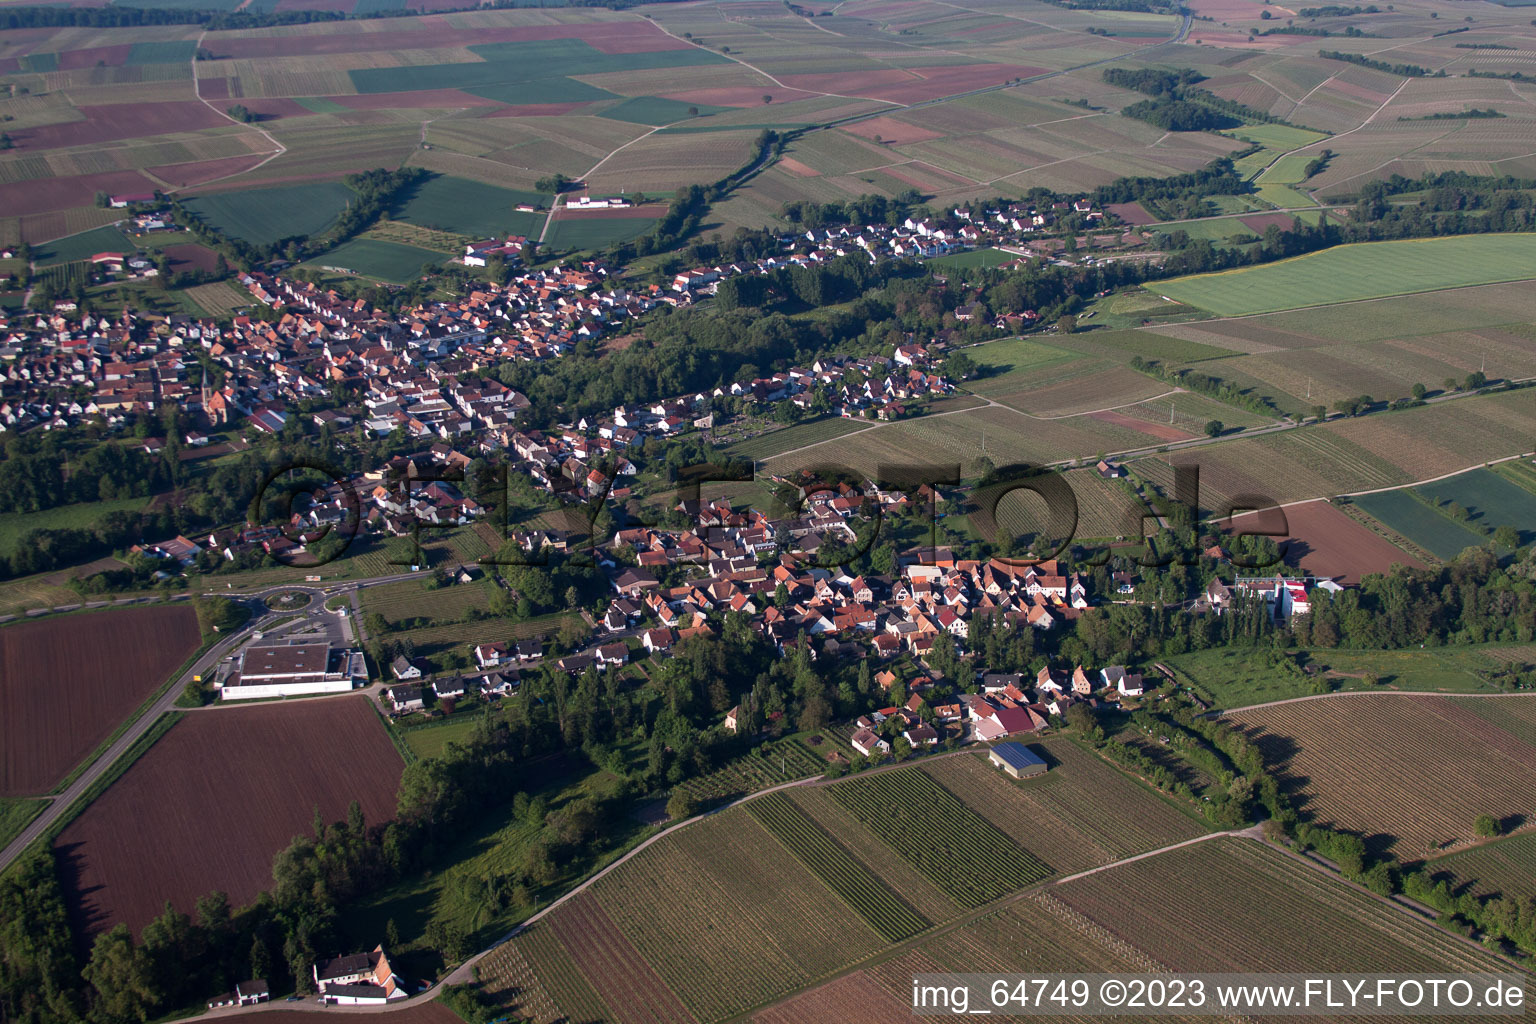 Luftbild von Ortsteil Ingenheim in Billigheim-Ingenheim im Bundesland Rheinland-Pfalz, Deutschland